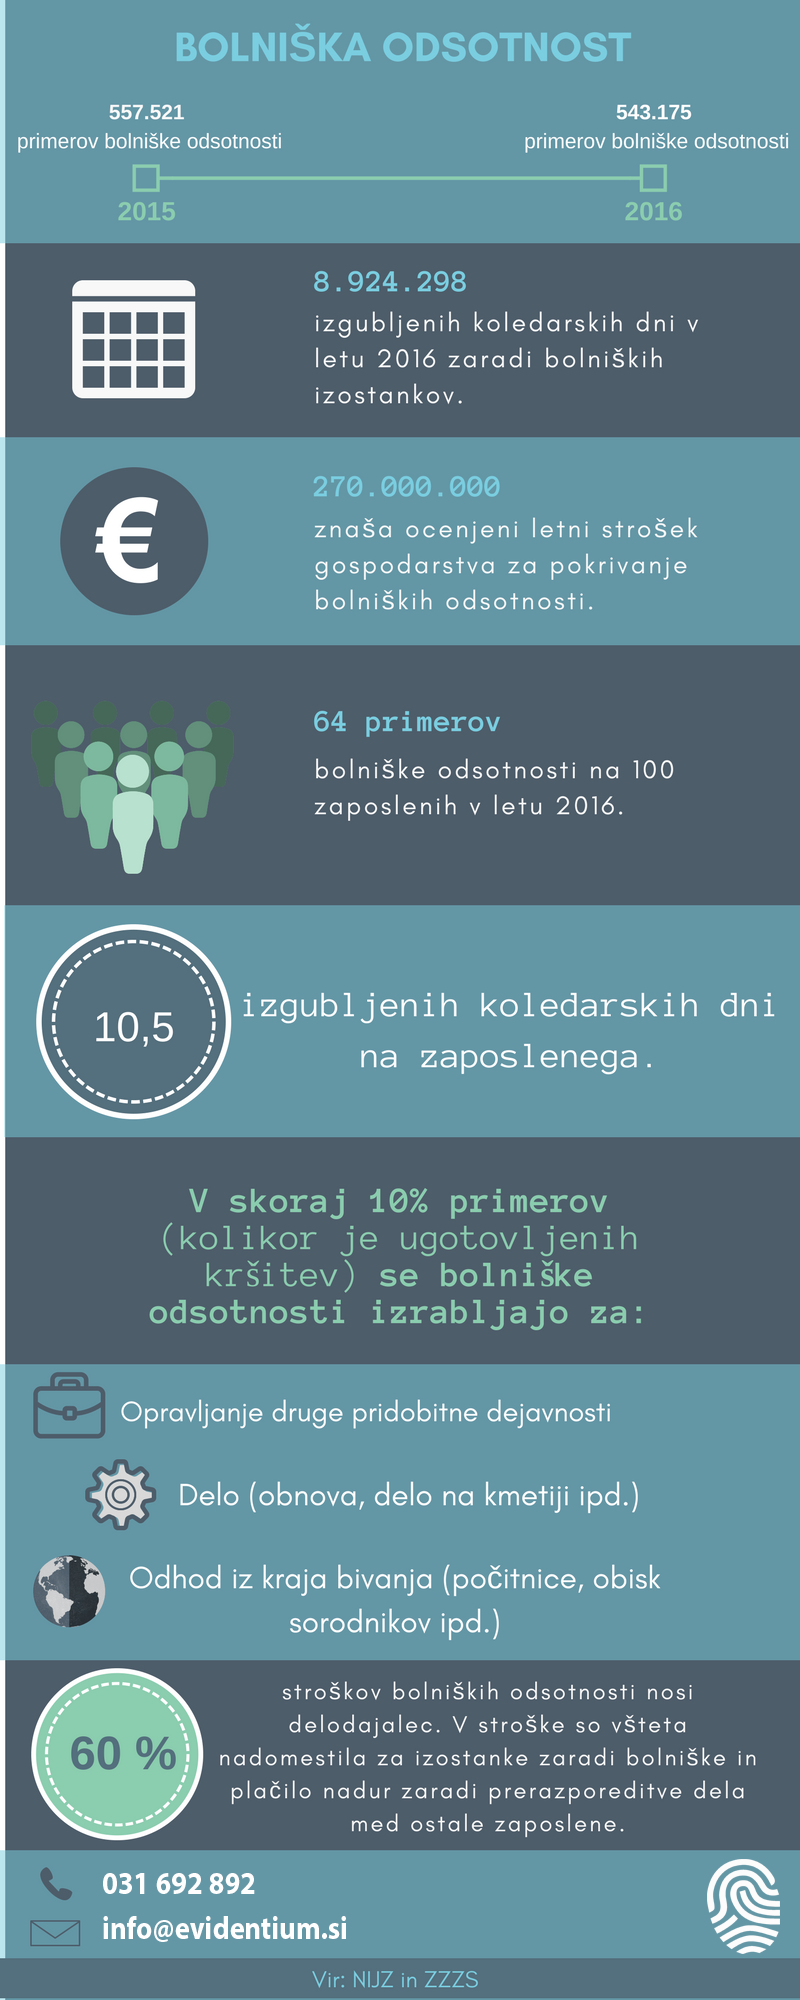 Infografika: Bolniška odsotnost v Sloveniji za 2016